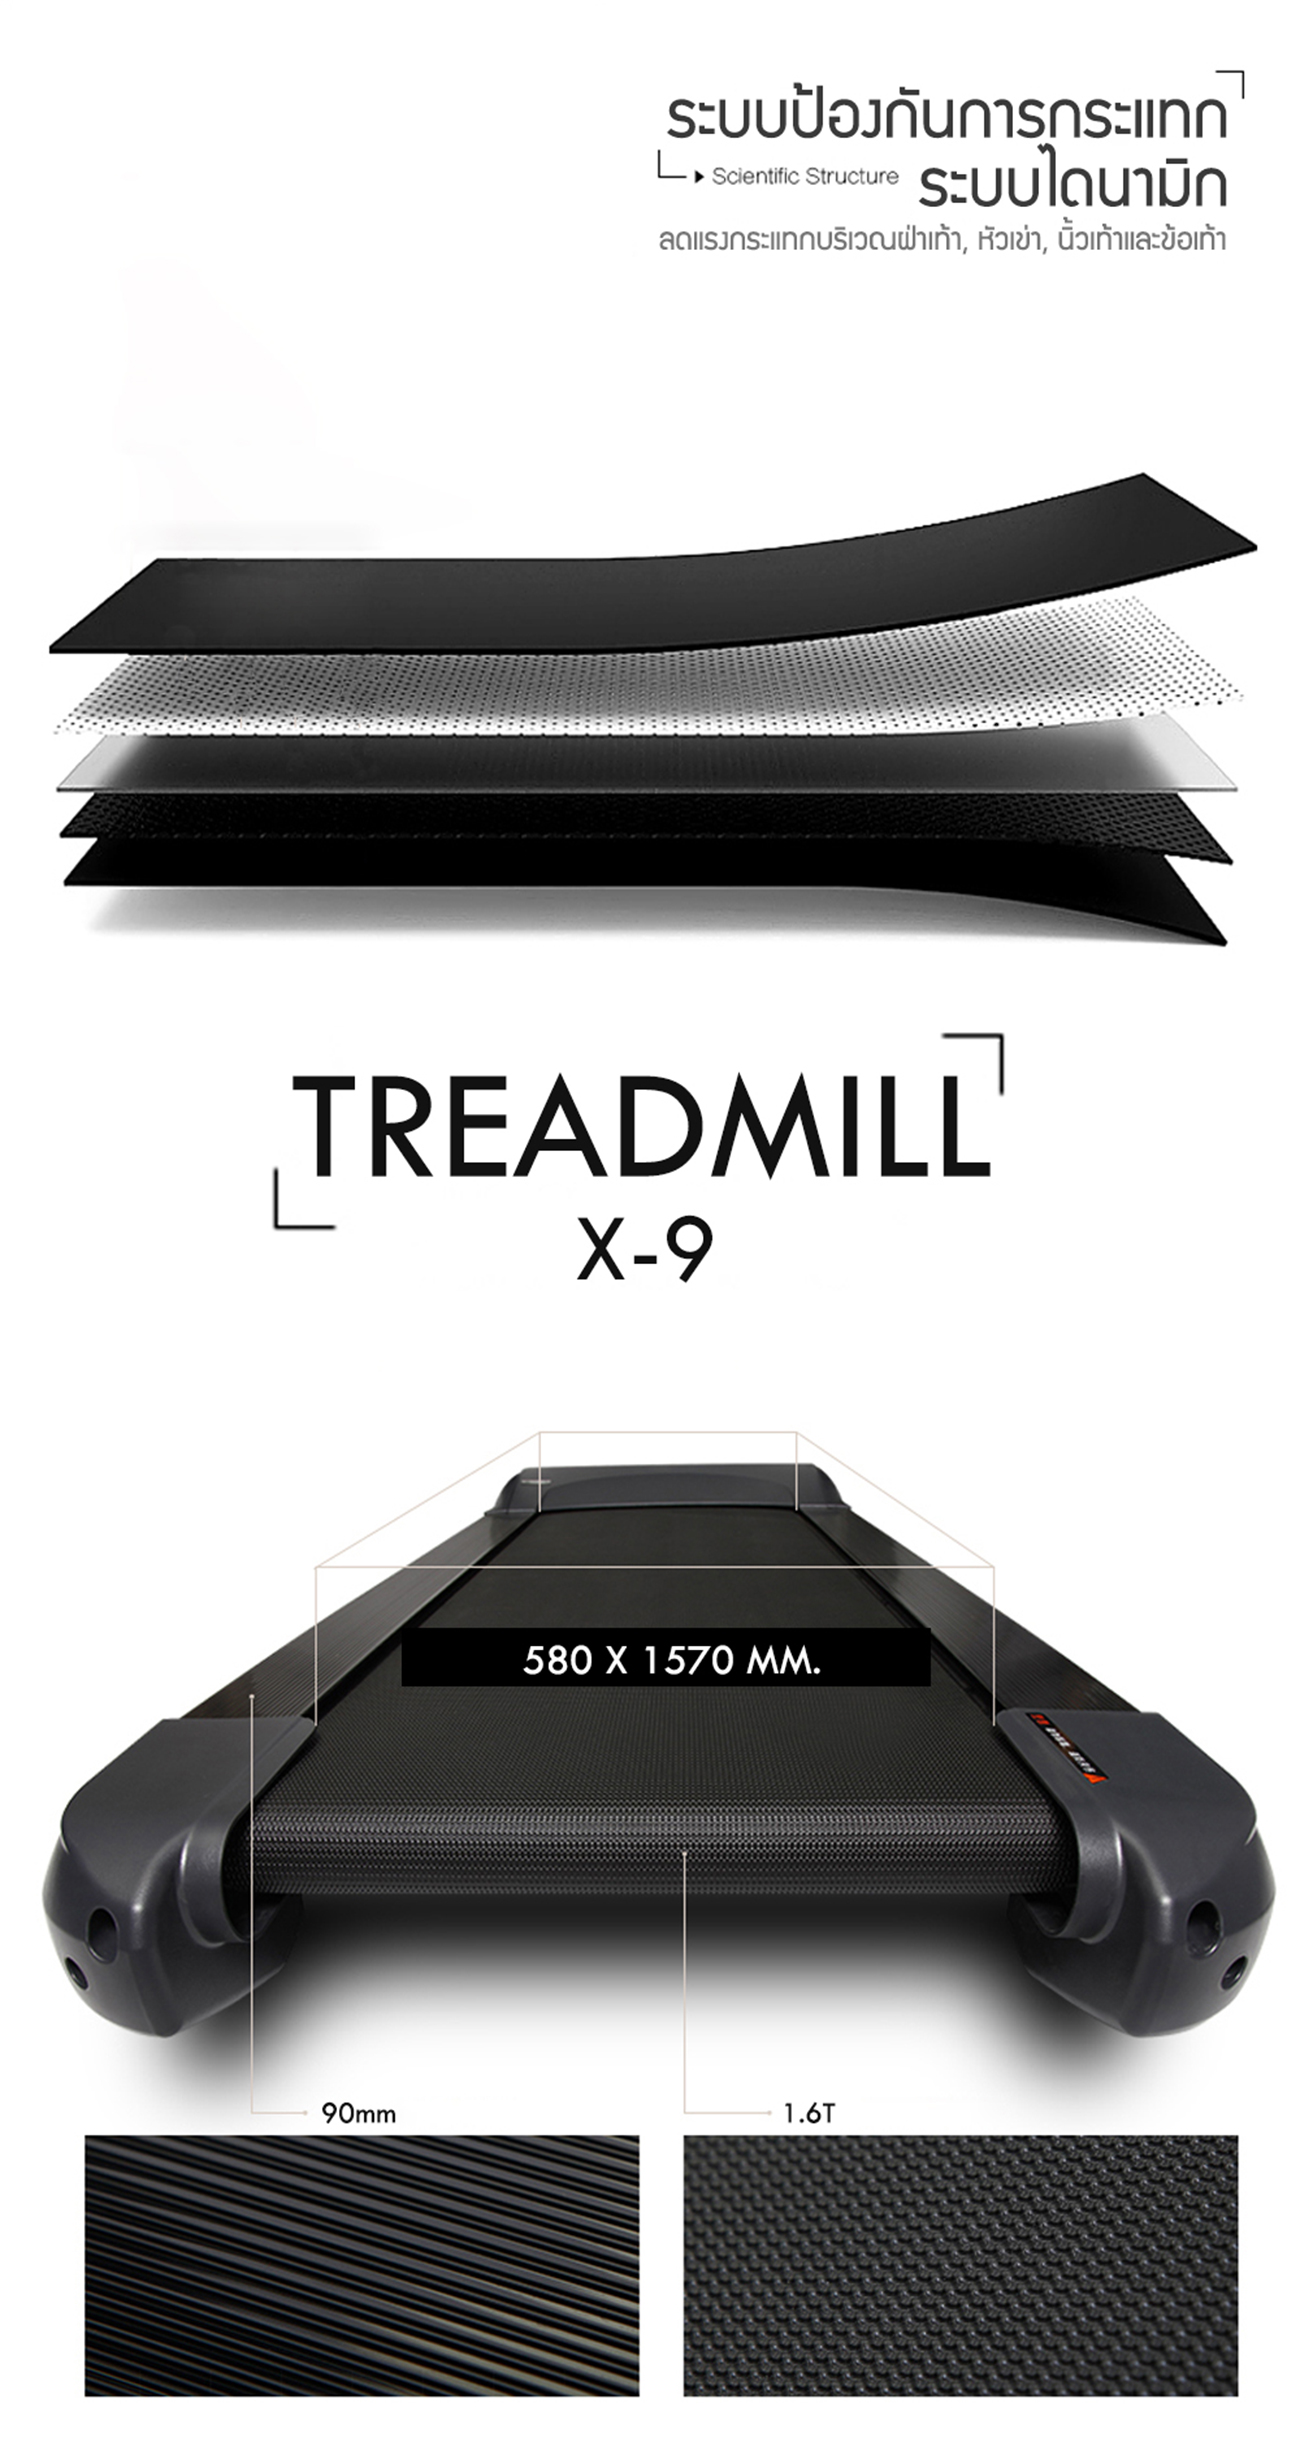 ลู่วิ่งไฟฟ้า 360 องศา ฟิตเนส Commercial Treadmill X9 - AC 6.0 HP motor (motor peak 7.0HP)